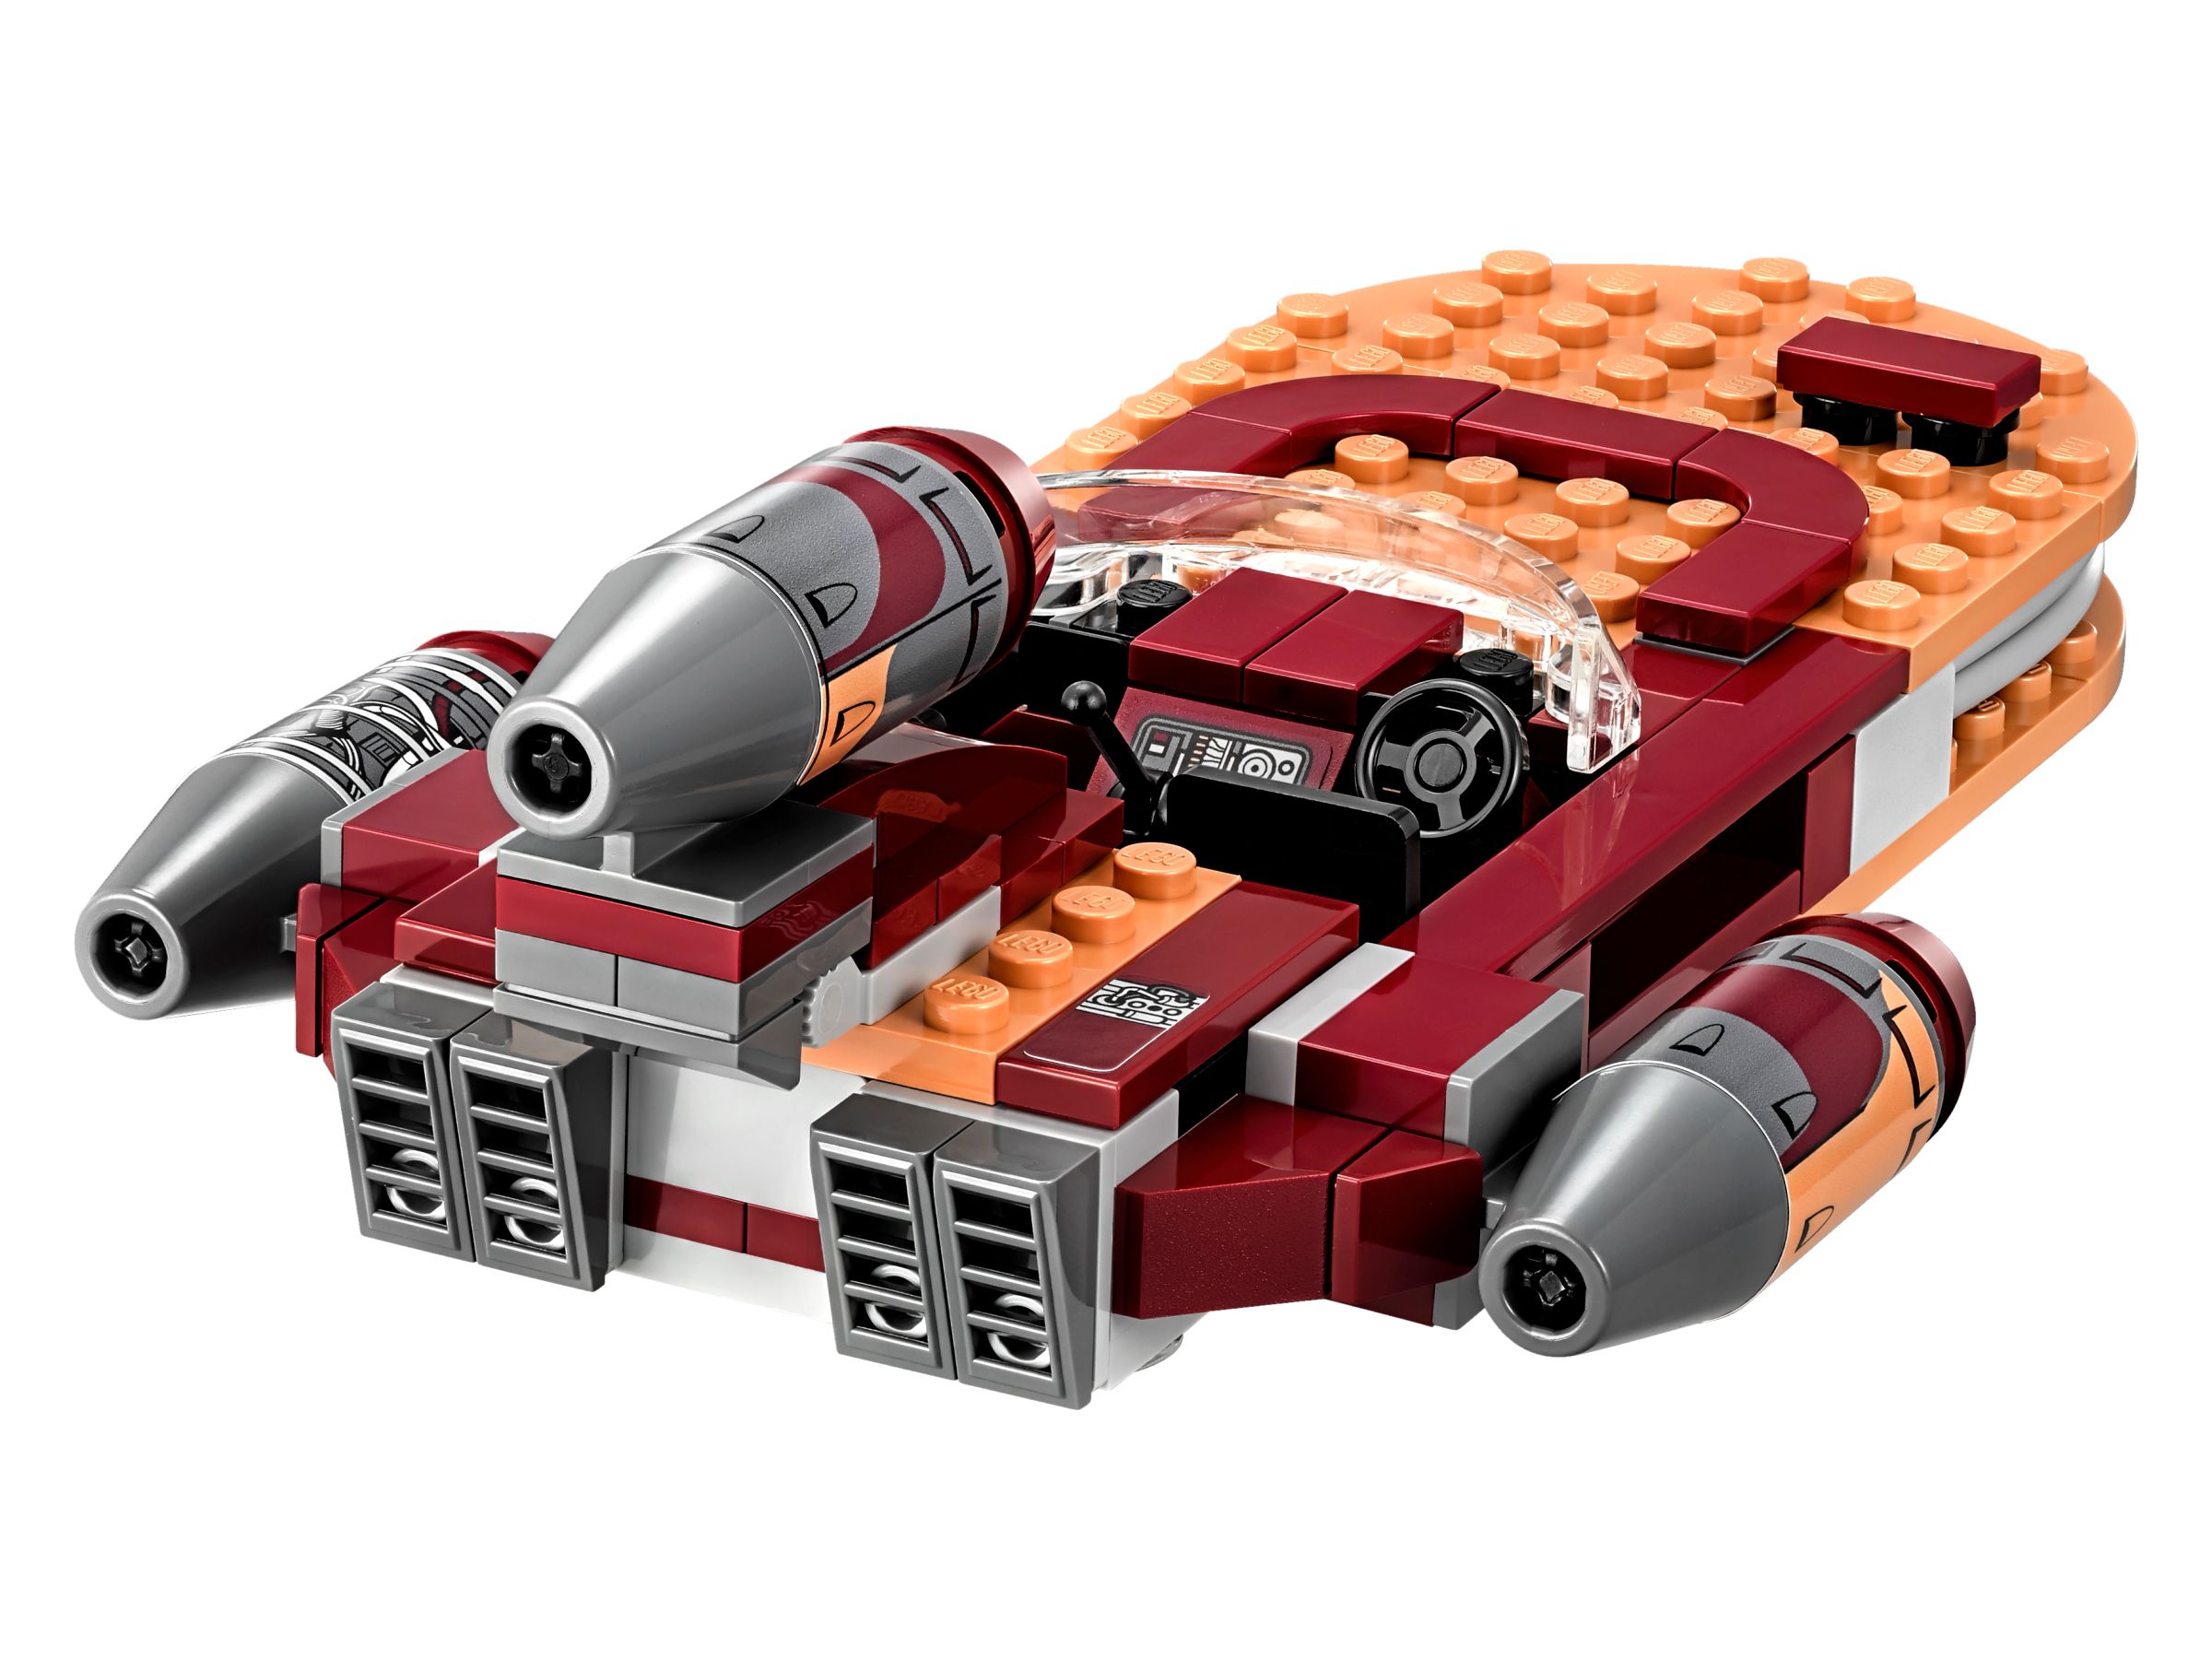 LEGO Star Wars 75173 Luke's Landspeeder™ LEGO_75173_alt3.jpg